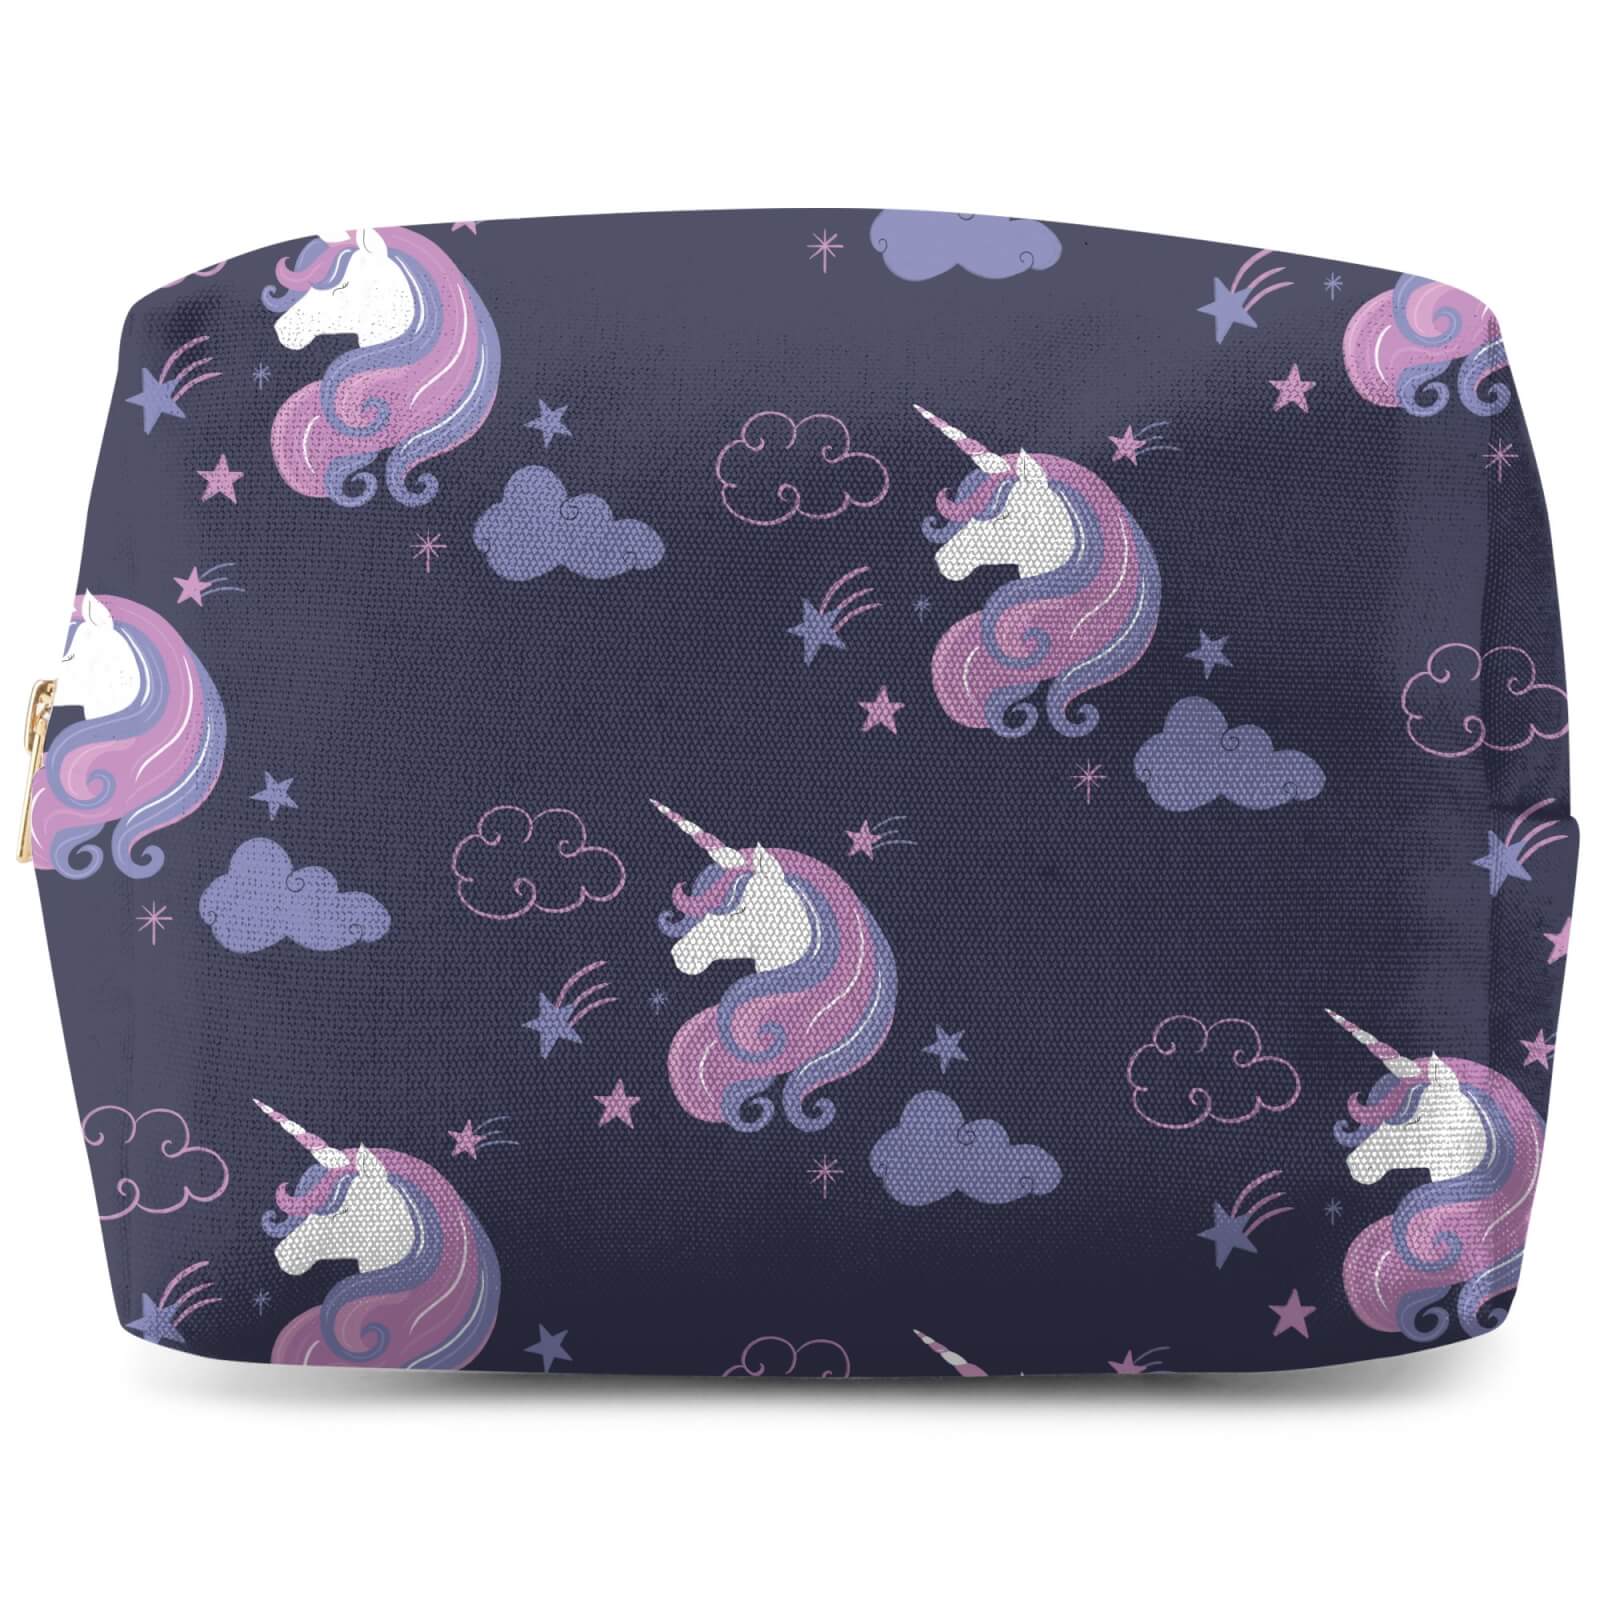 Unicorn Dreams Pattern Makeup Bag